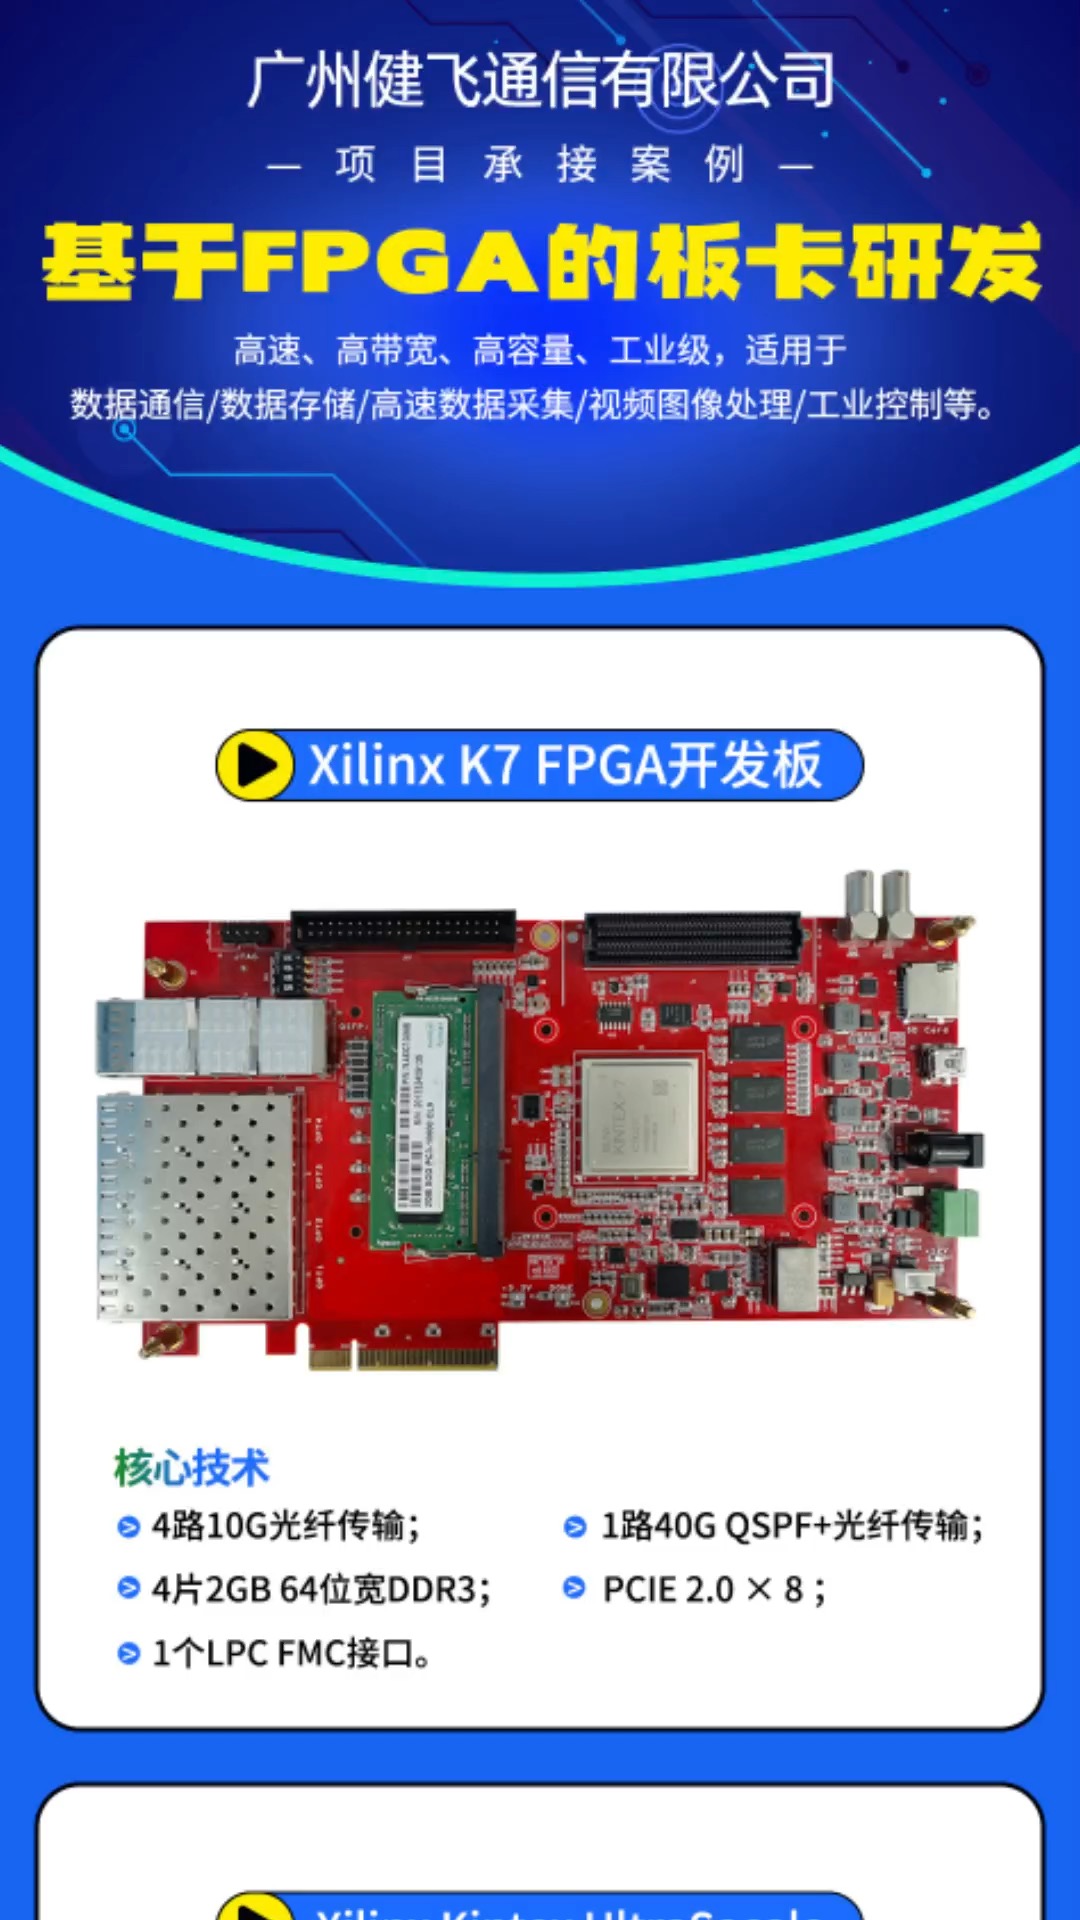 #fpga 

基于FPGA的板卡研发：高速、高带宽、高容量、工业级。
适用于高于数据通信/数据存储/高速数据